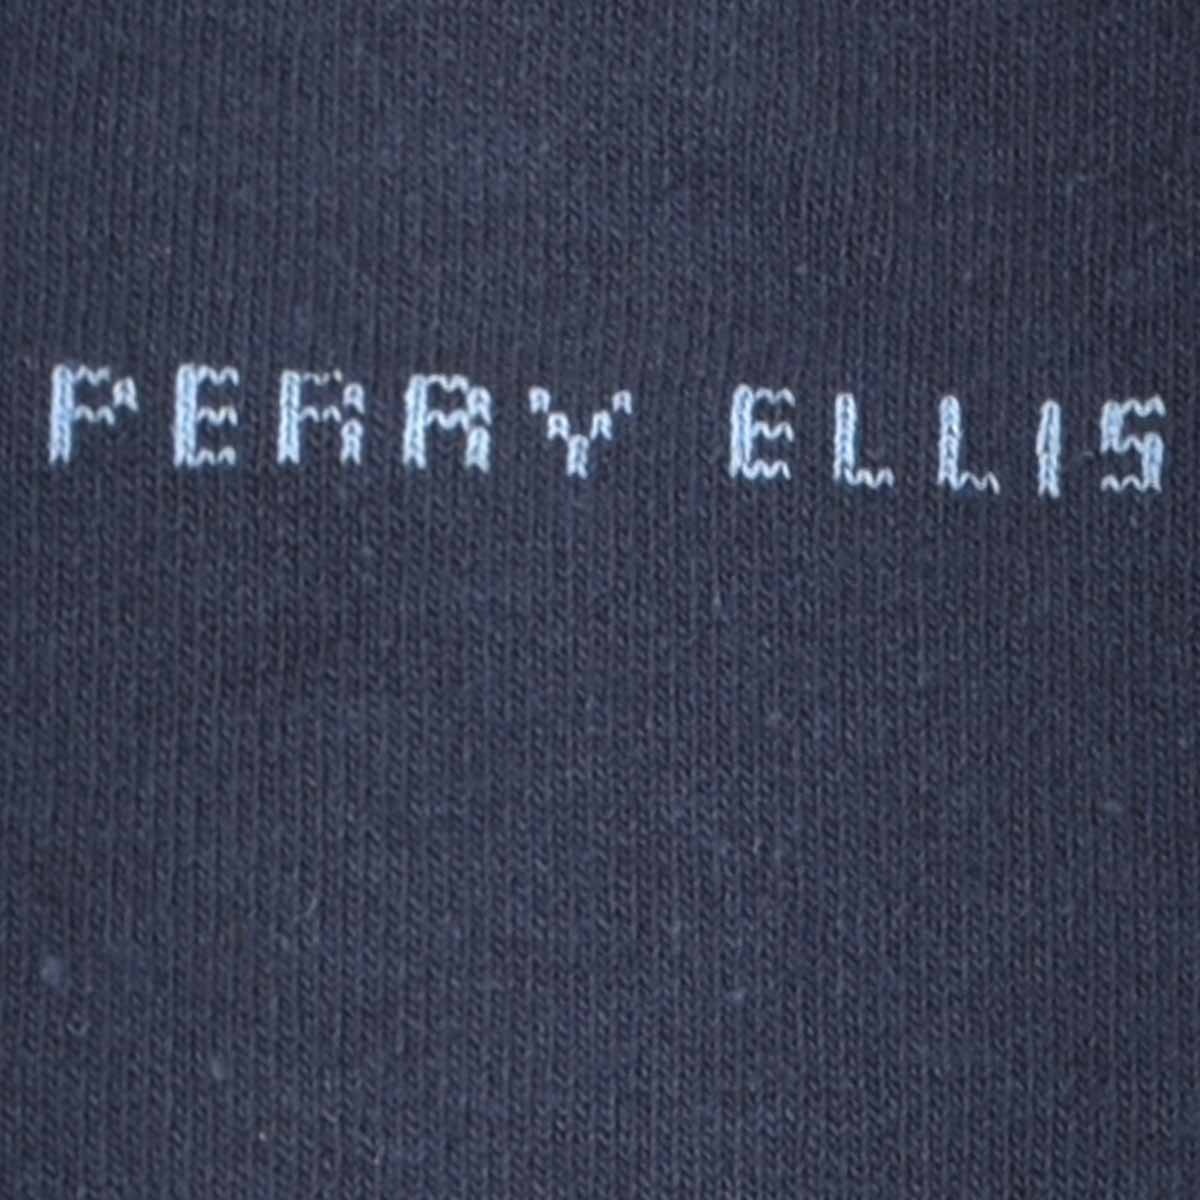 Paquete con 3 Calcetines para Hombre Perry Ellis Modelo Elo 2272 a